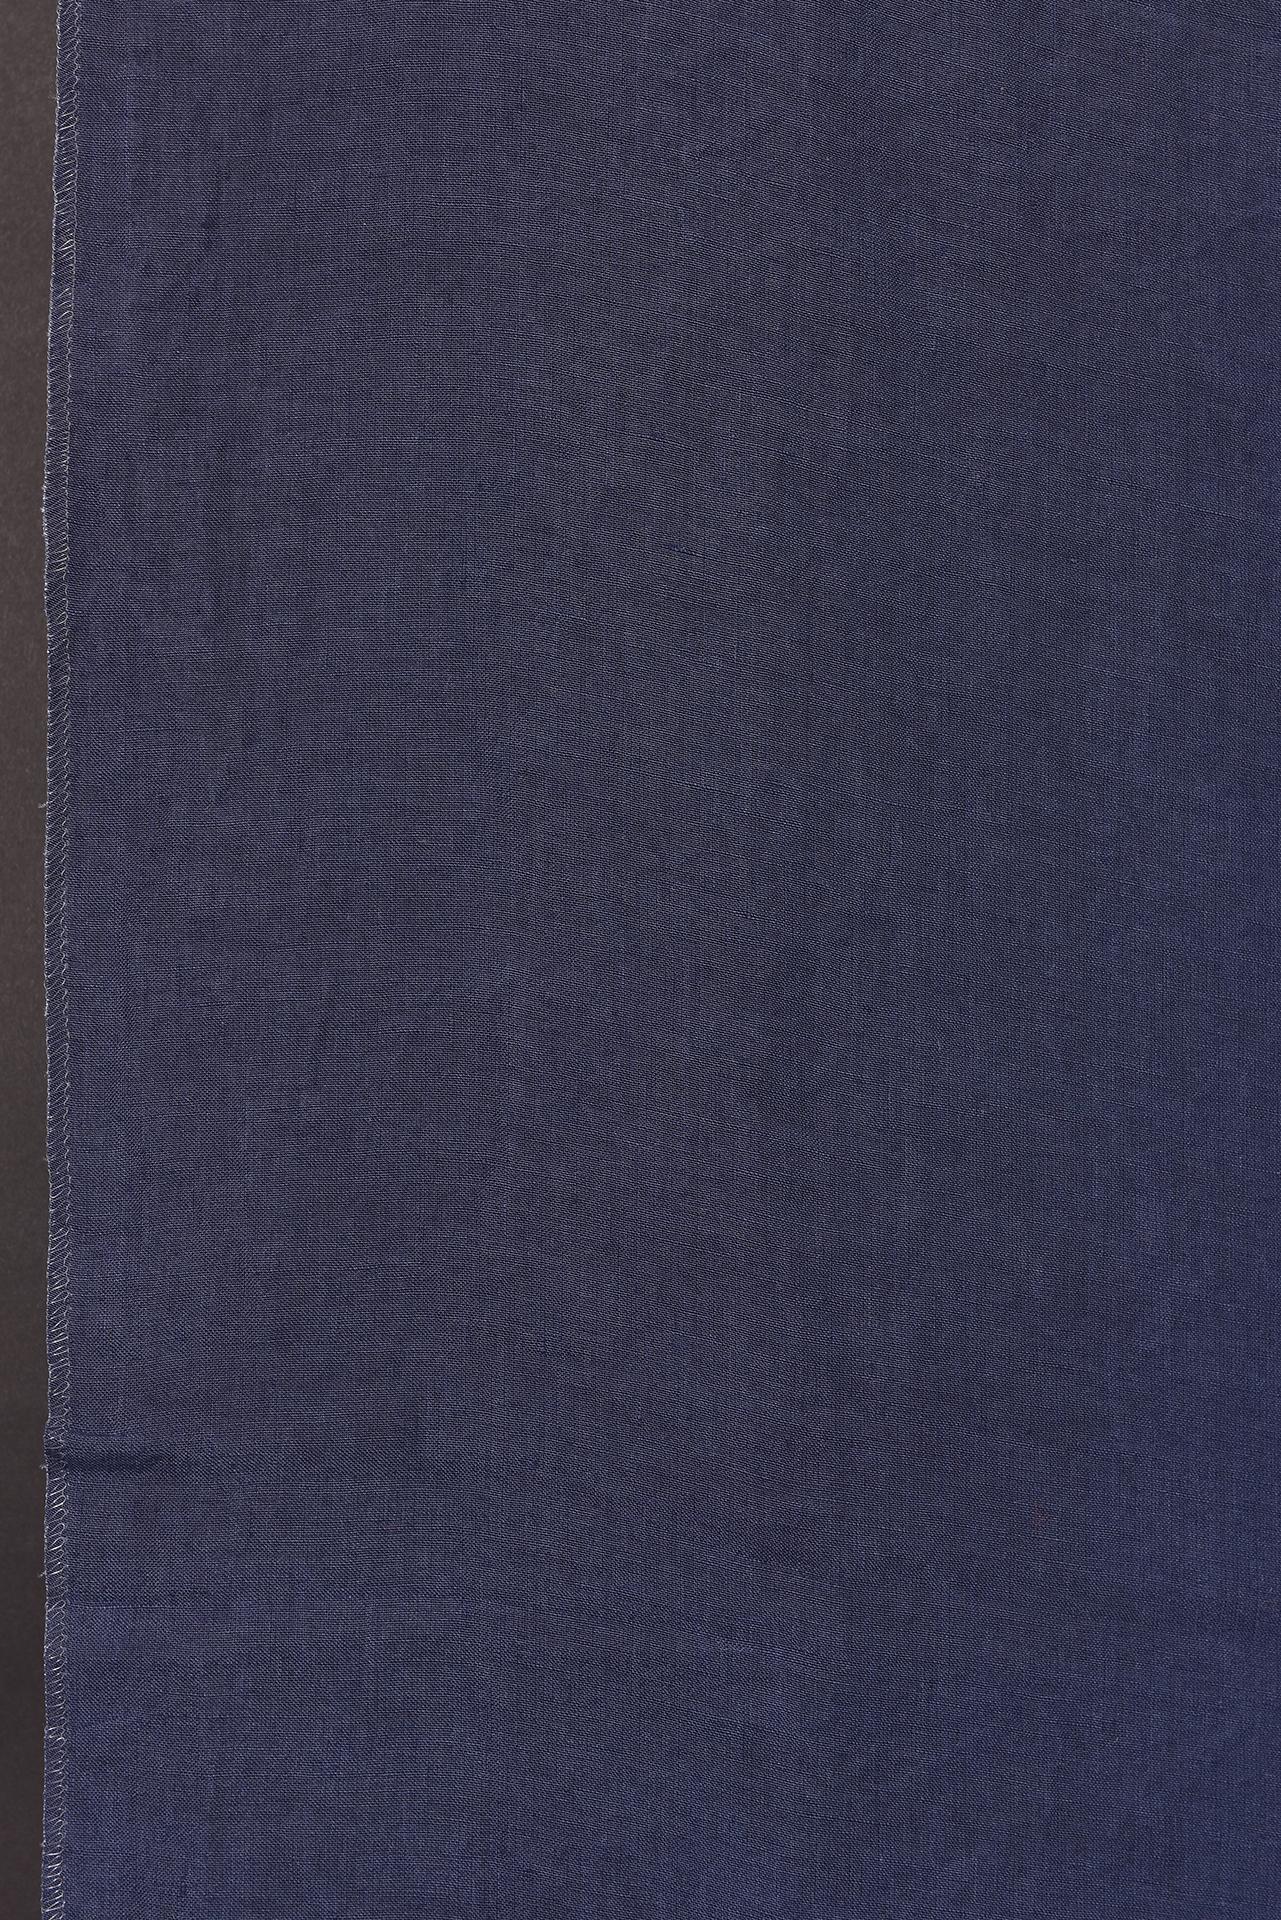 Schattiertes blaues Leinen für Vorhänge oder andere Zwecke (Maschinell gefertigt) im Angebot